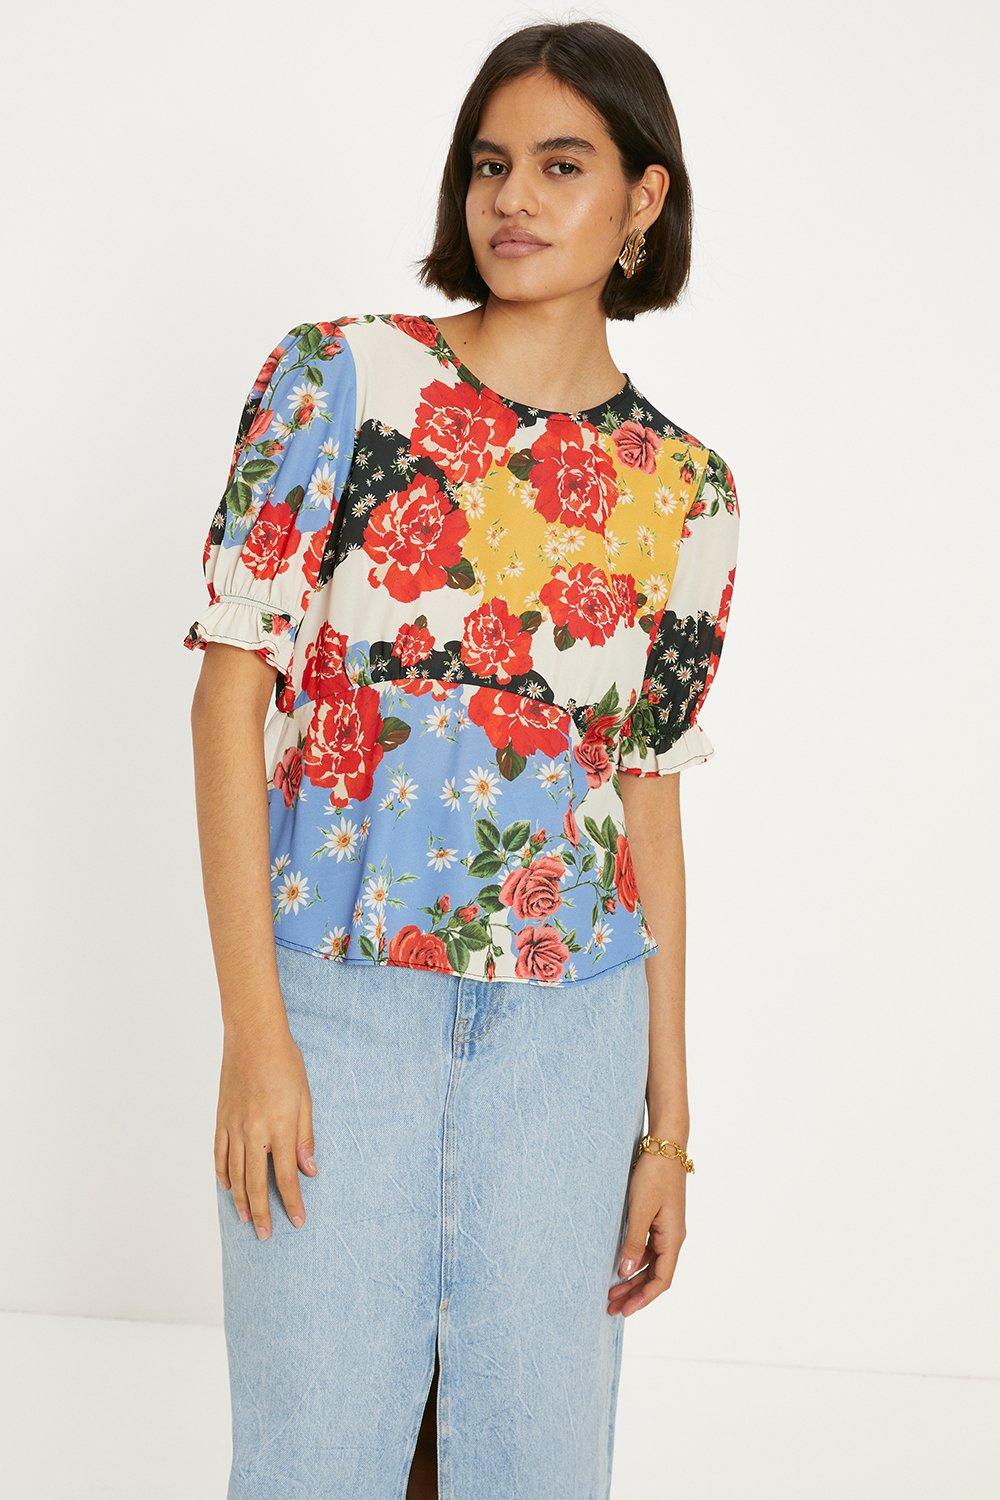 Чайная блузка с короткими рукавами и цветочным принтом Oasis, мультиколор блузка с цветочным принтом и короткими рукавами 40 fr 46 rus черный